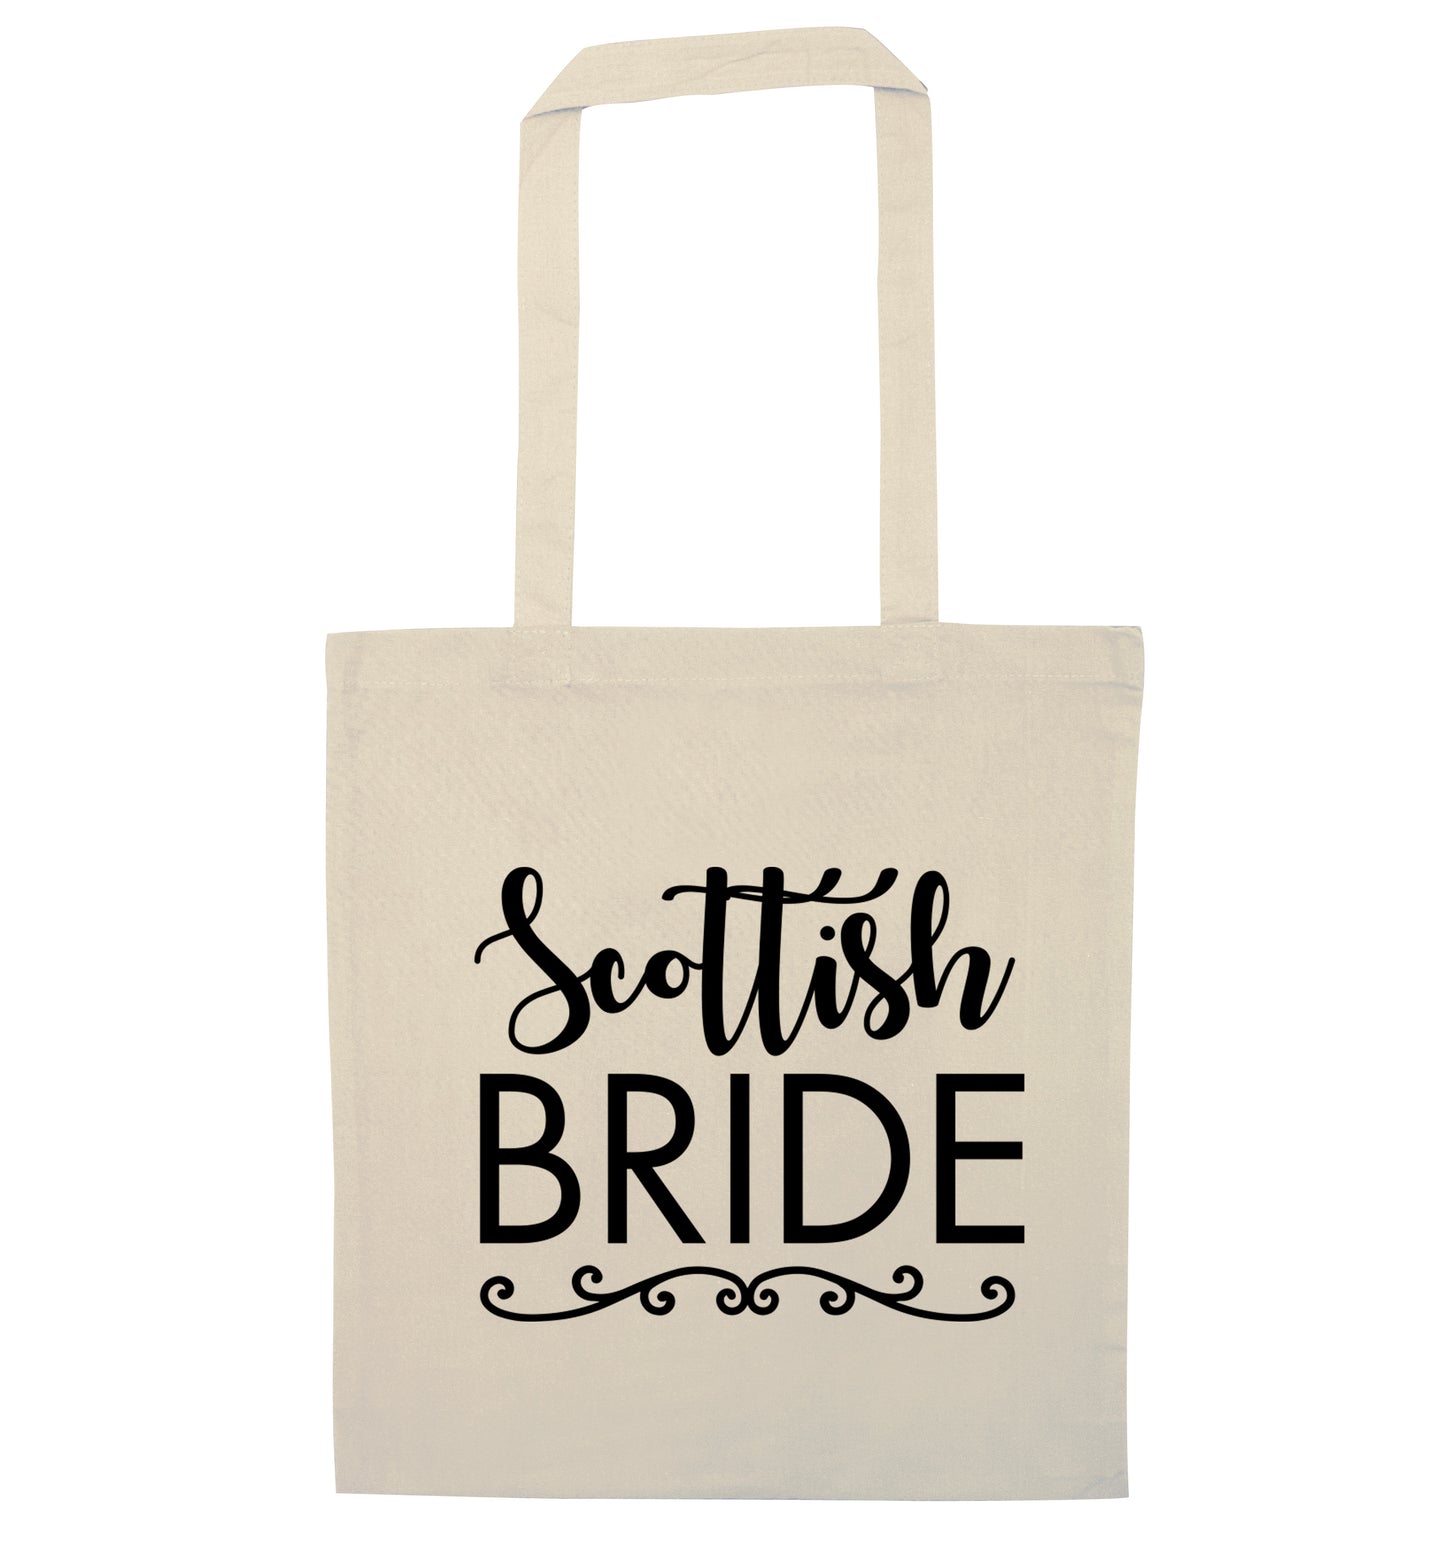 Scottish Bride natural tote bag